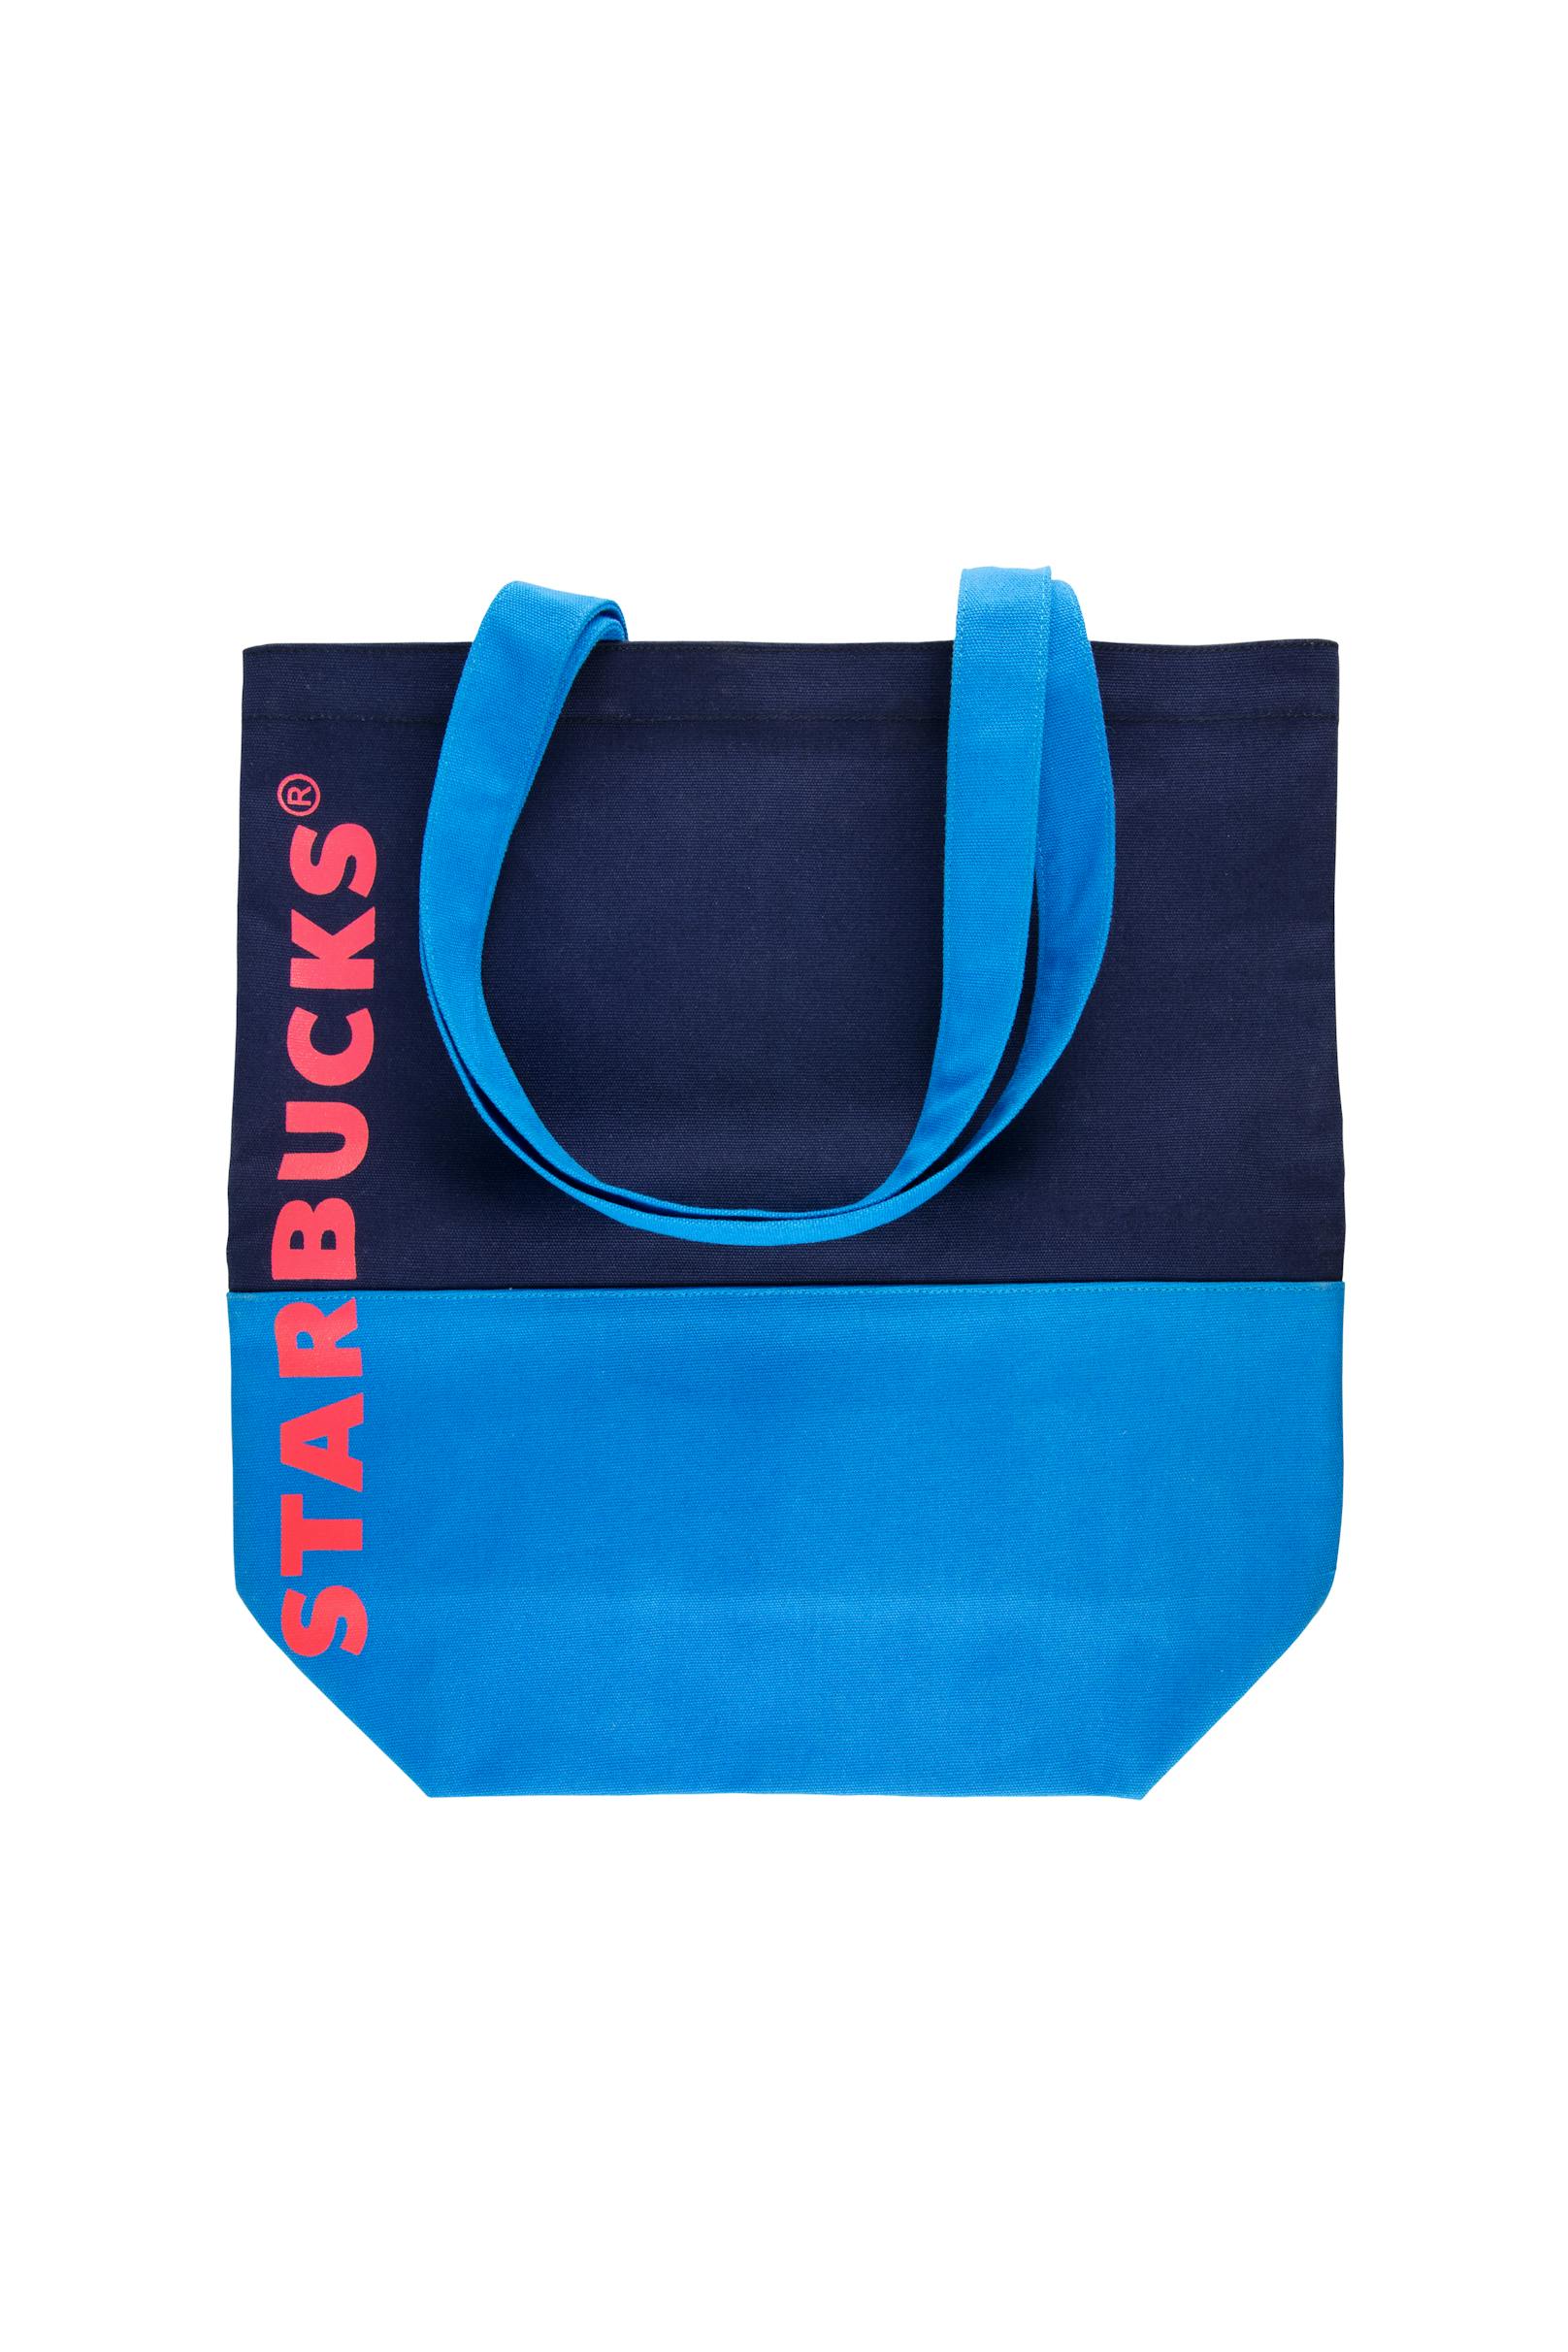 Starbucks Toat Bag in zwei prächtigen, blauen Farbtönen